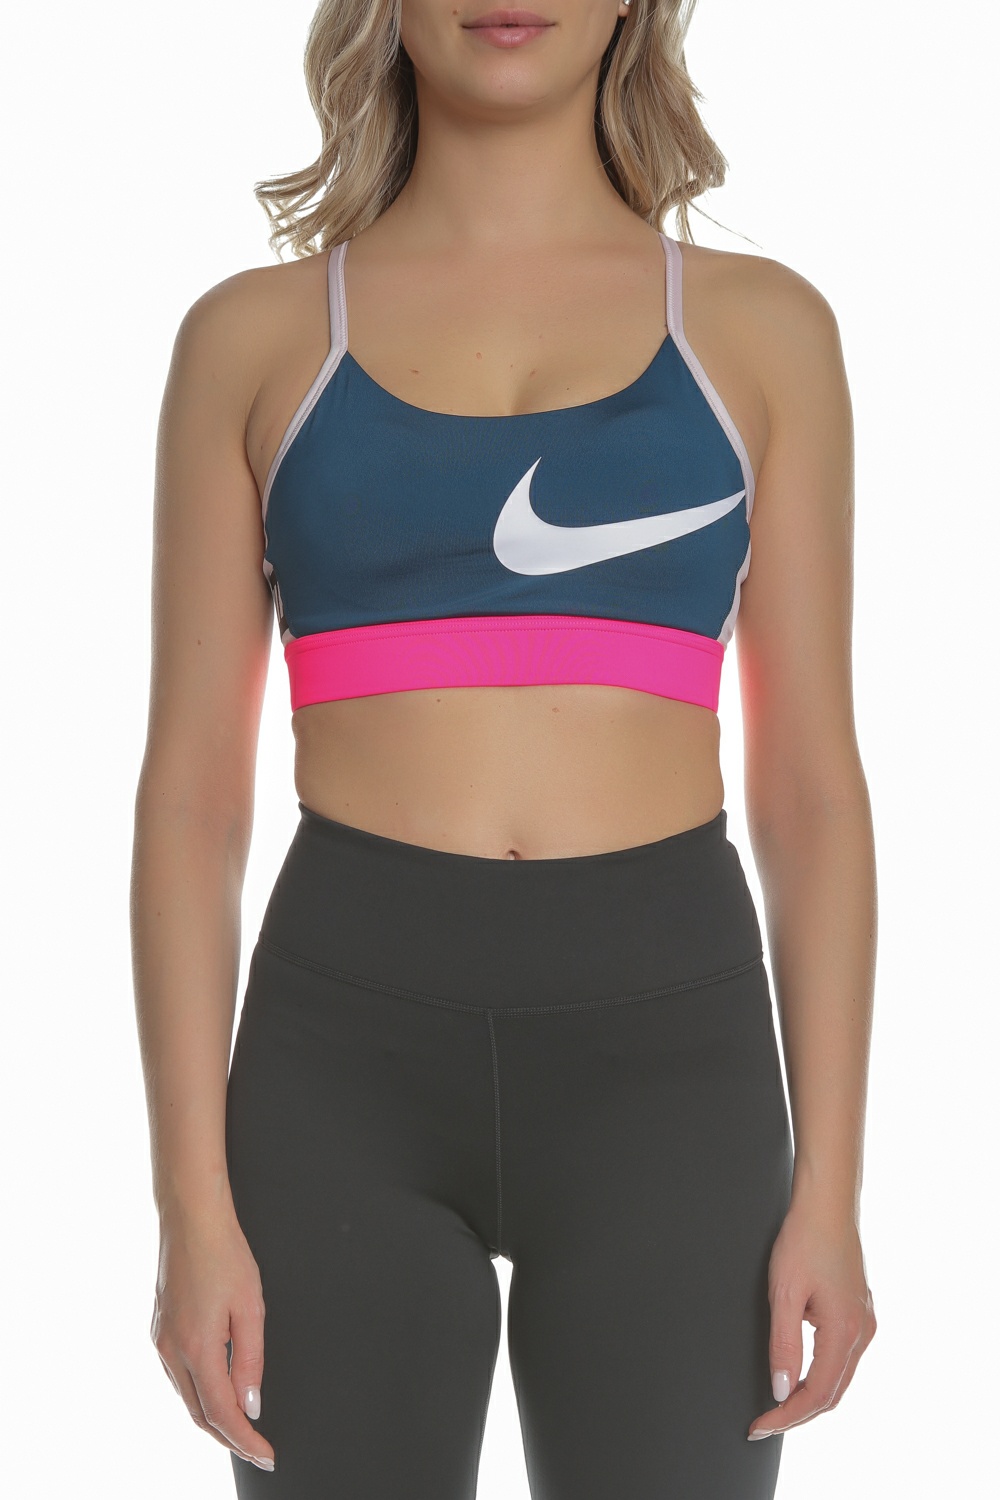 NIKE – Γυναικειο αθλητικο μπουστακι NIKE ICNCLSH BRA LIGHT μπλε ροζ